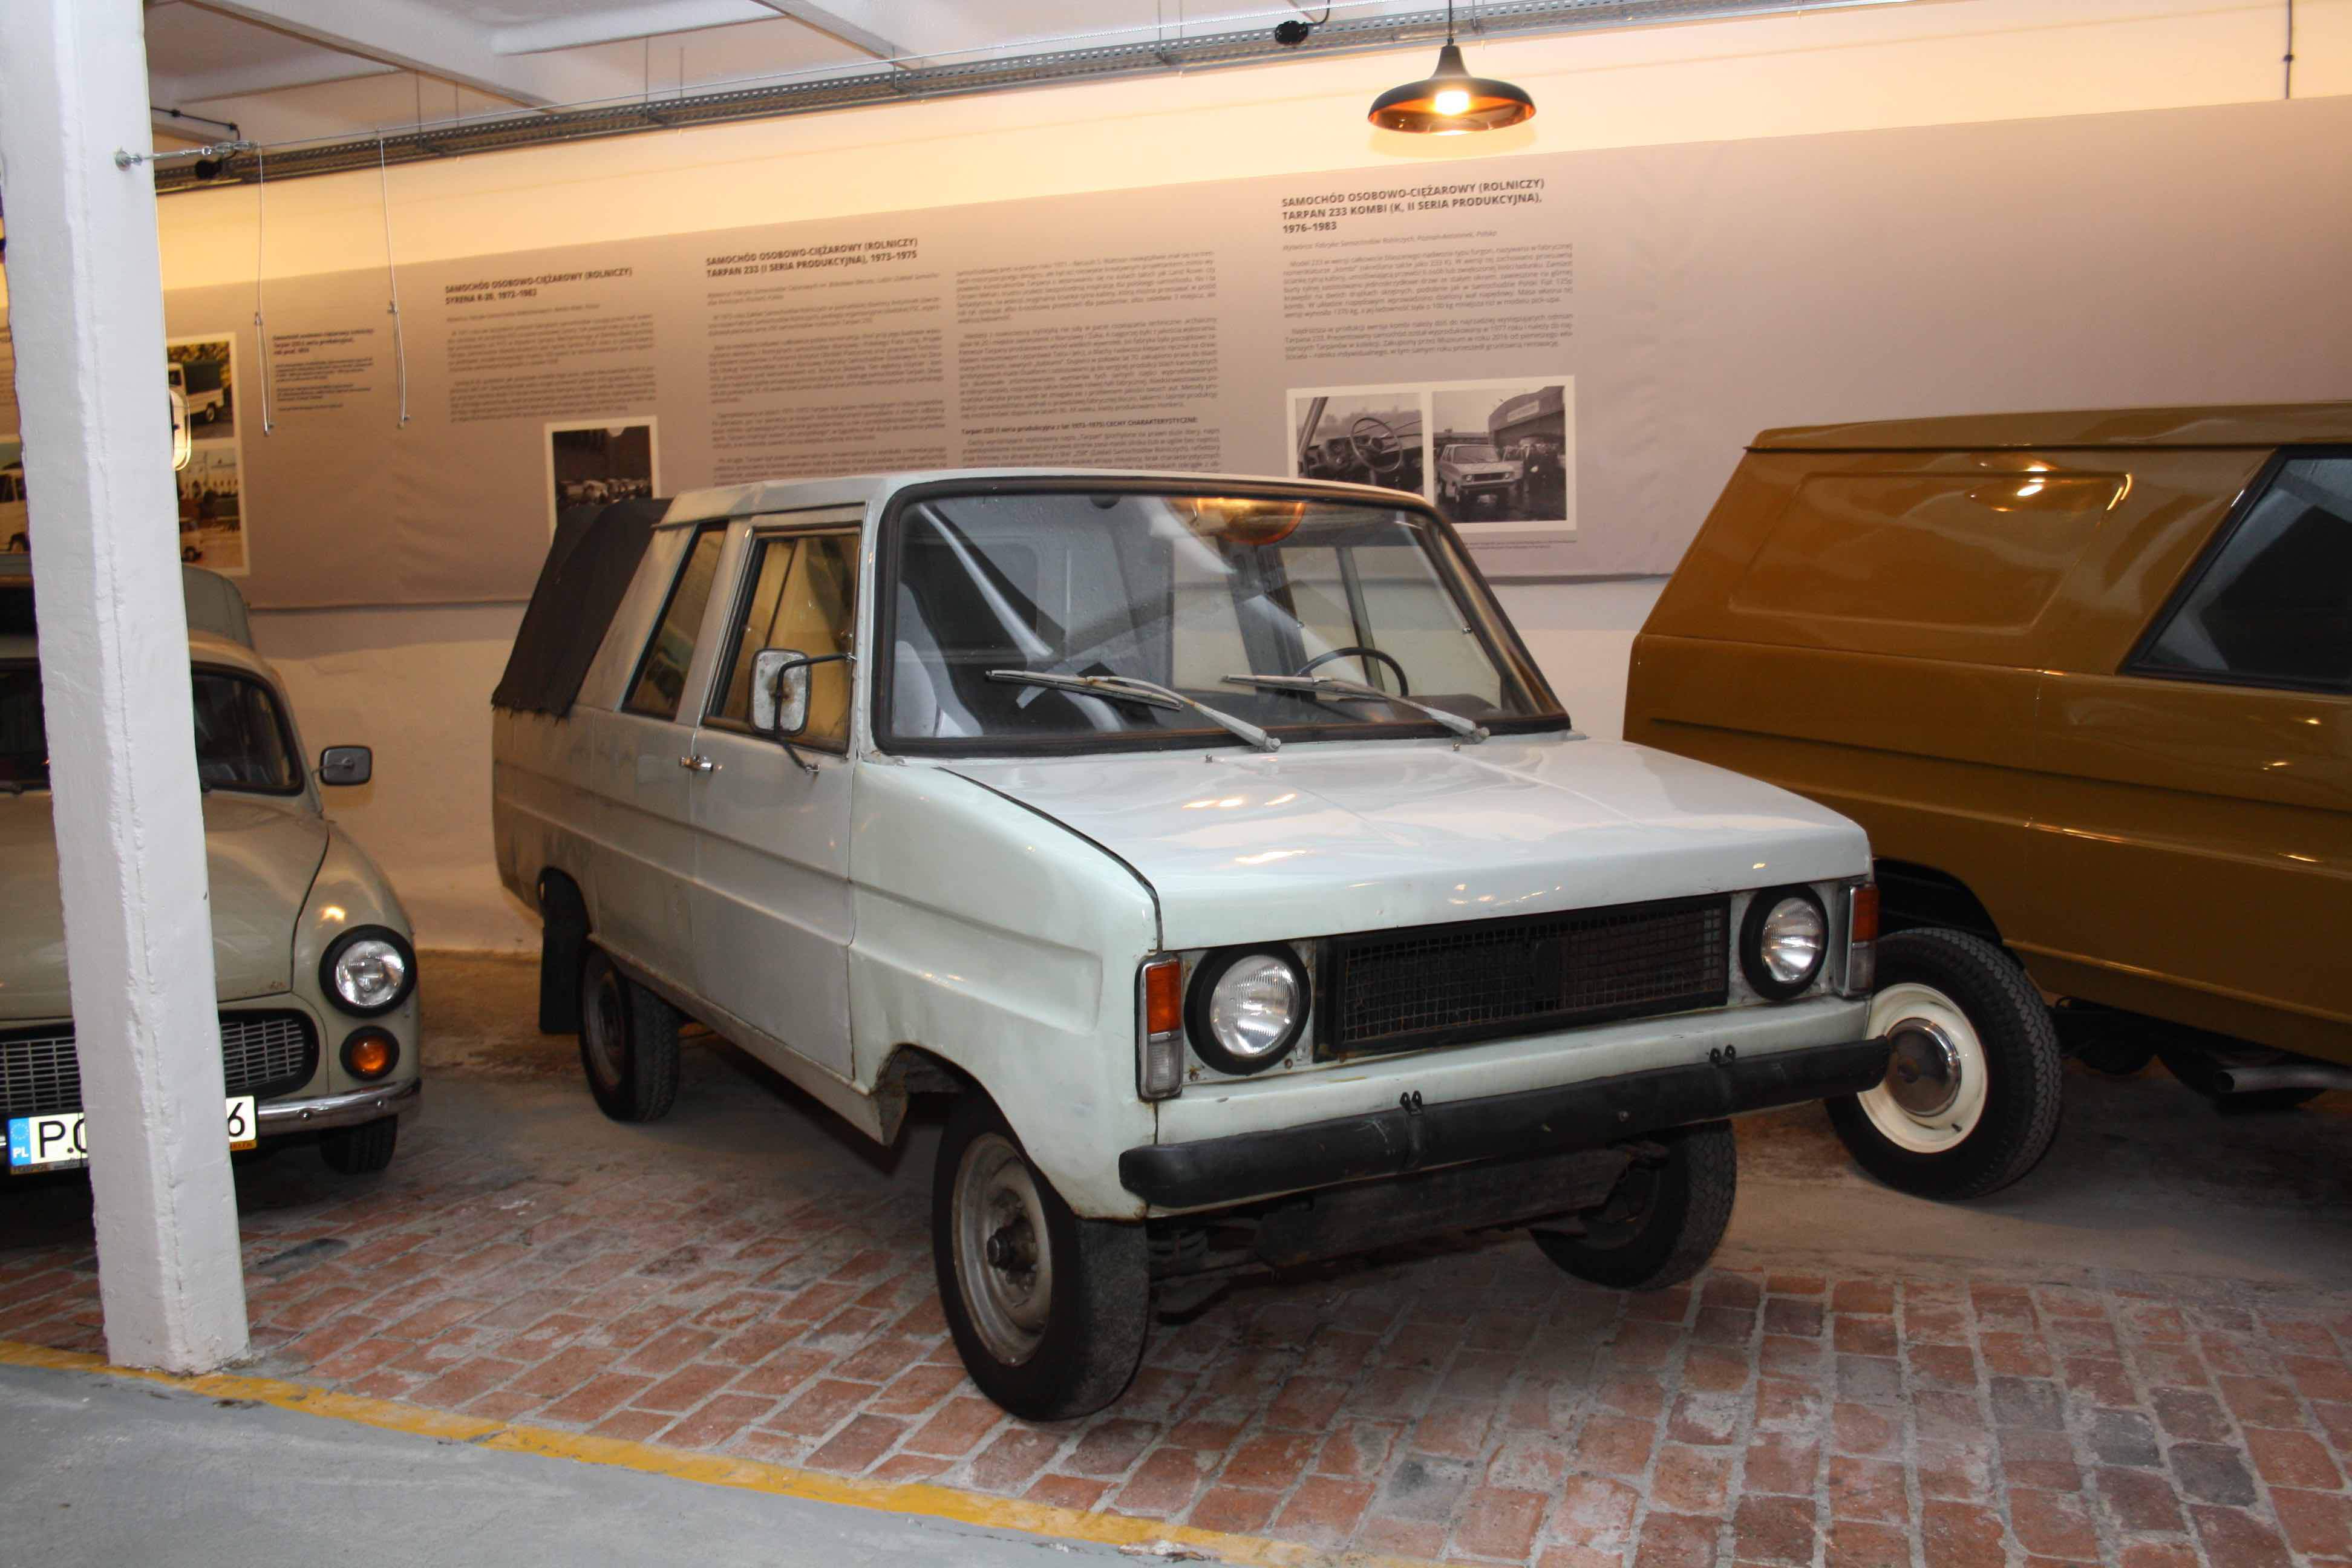 Najstarszy egzemplarz w muzeum to Tarpan wyprodukowany w 1974 roku, czyli zaledwie rok po uruchomieniu produkcji w Antoninku